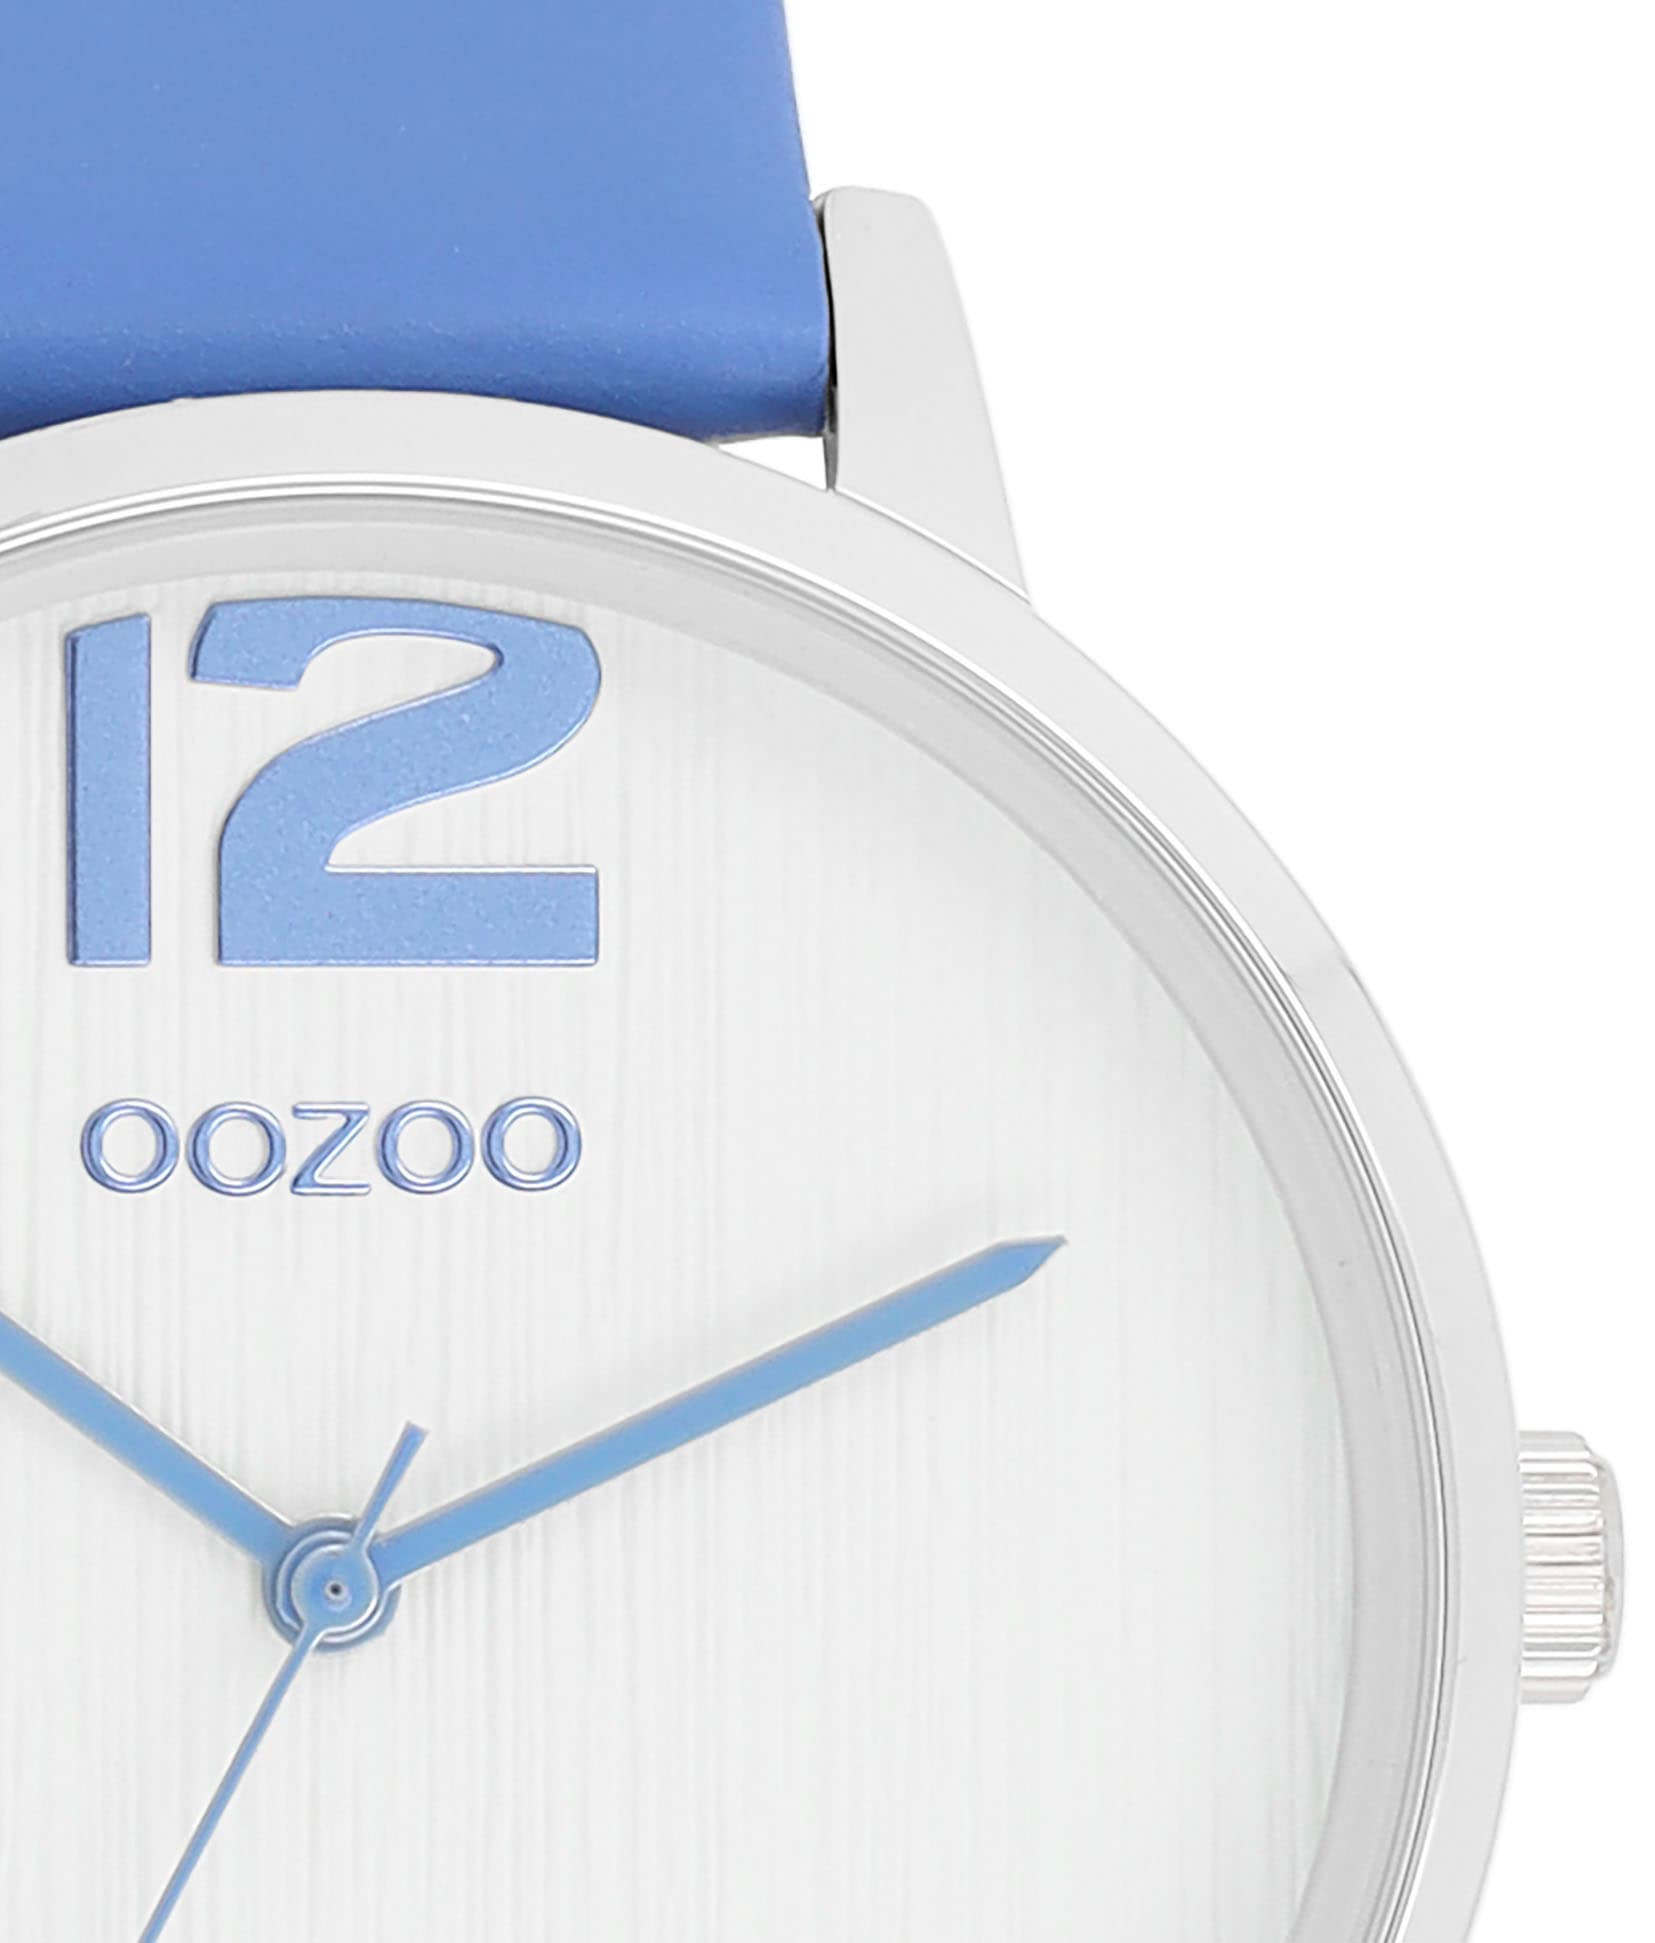 OOZOO Quarzuhr »C11235«, Armbanduhr, Damenuhr